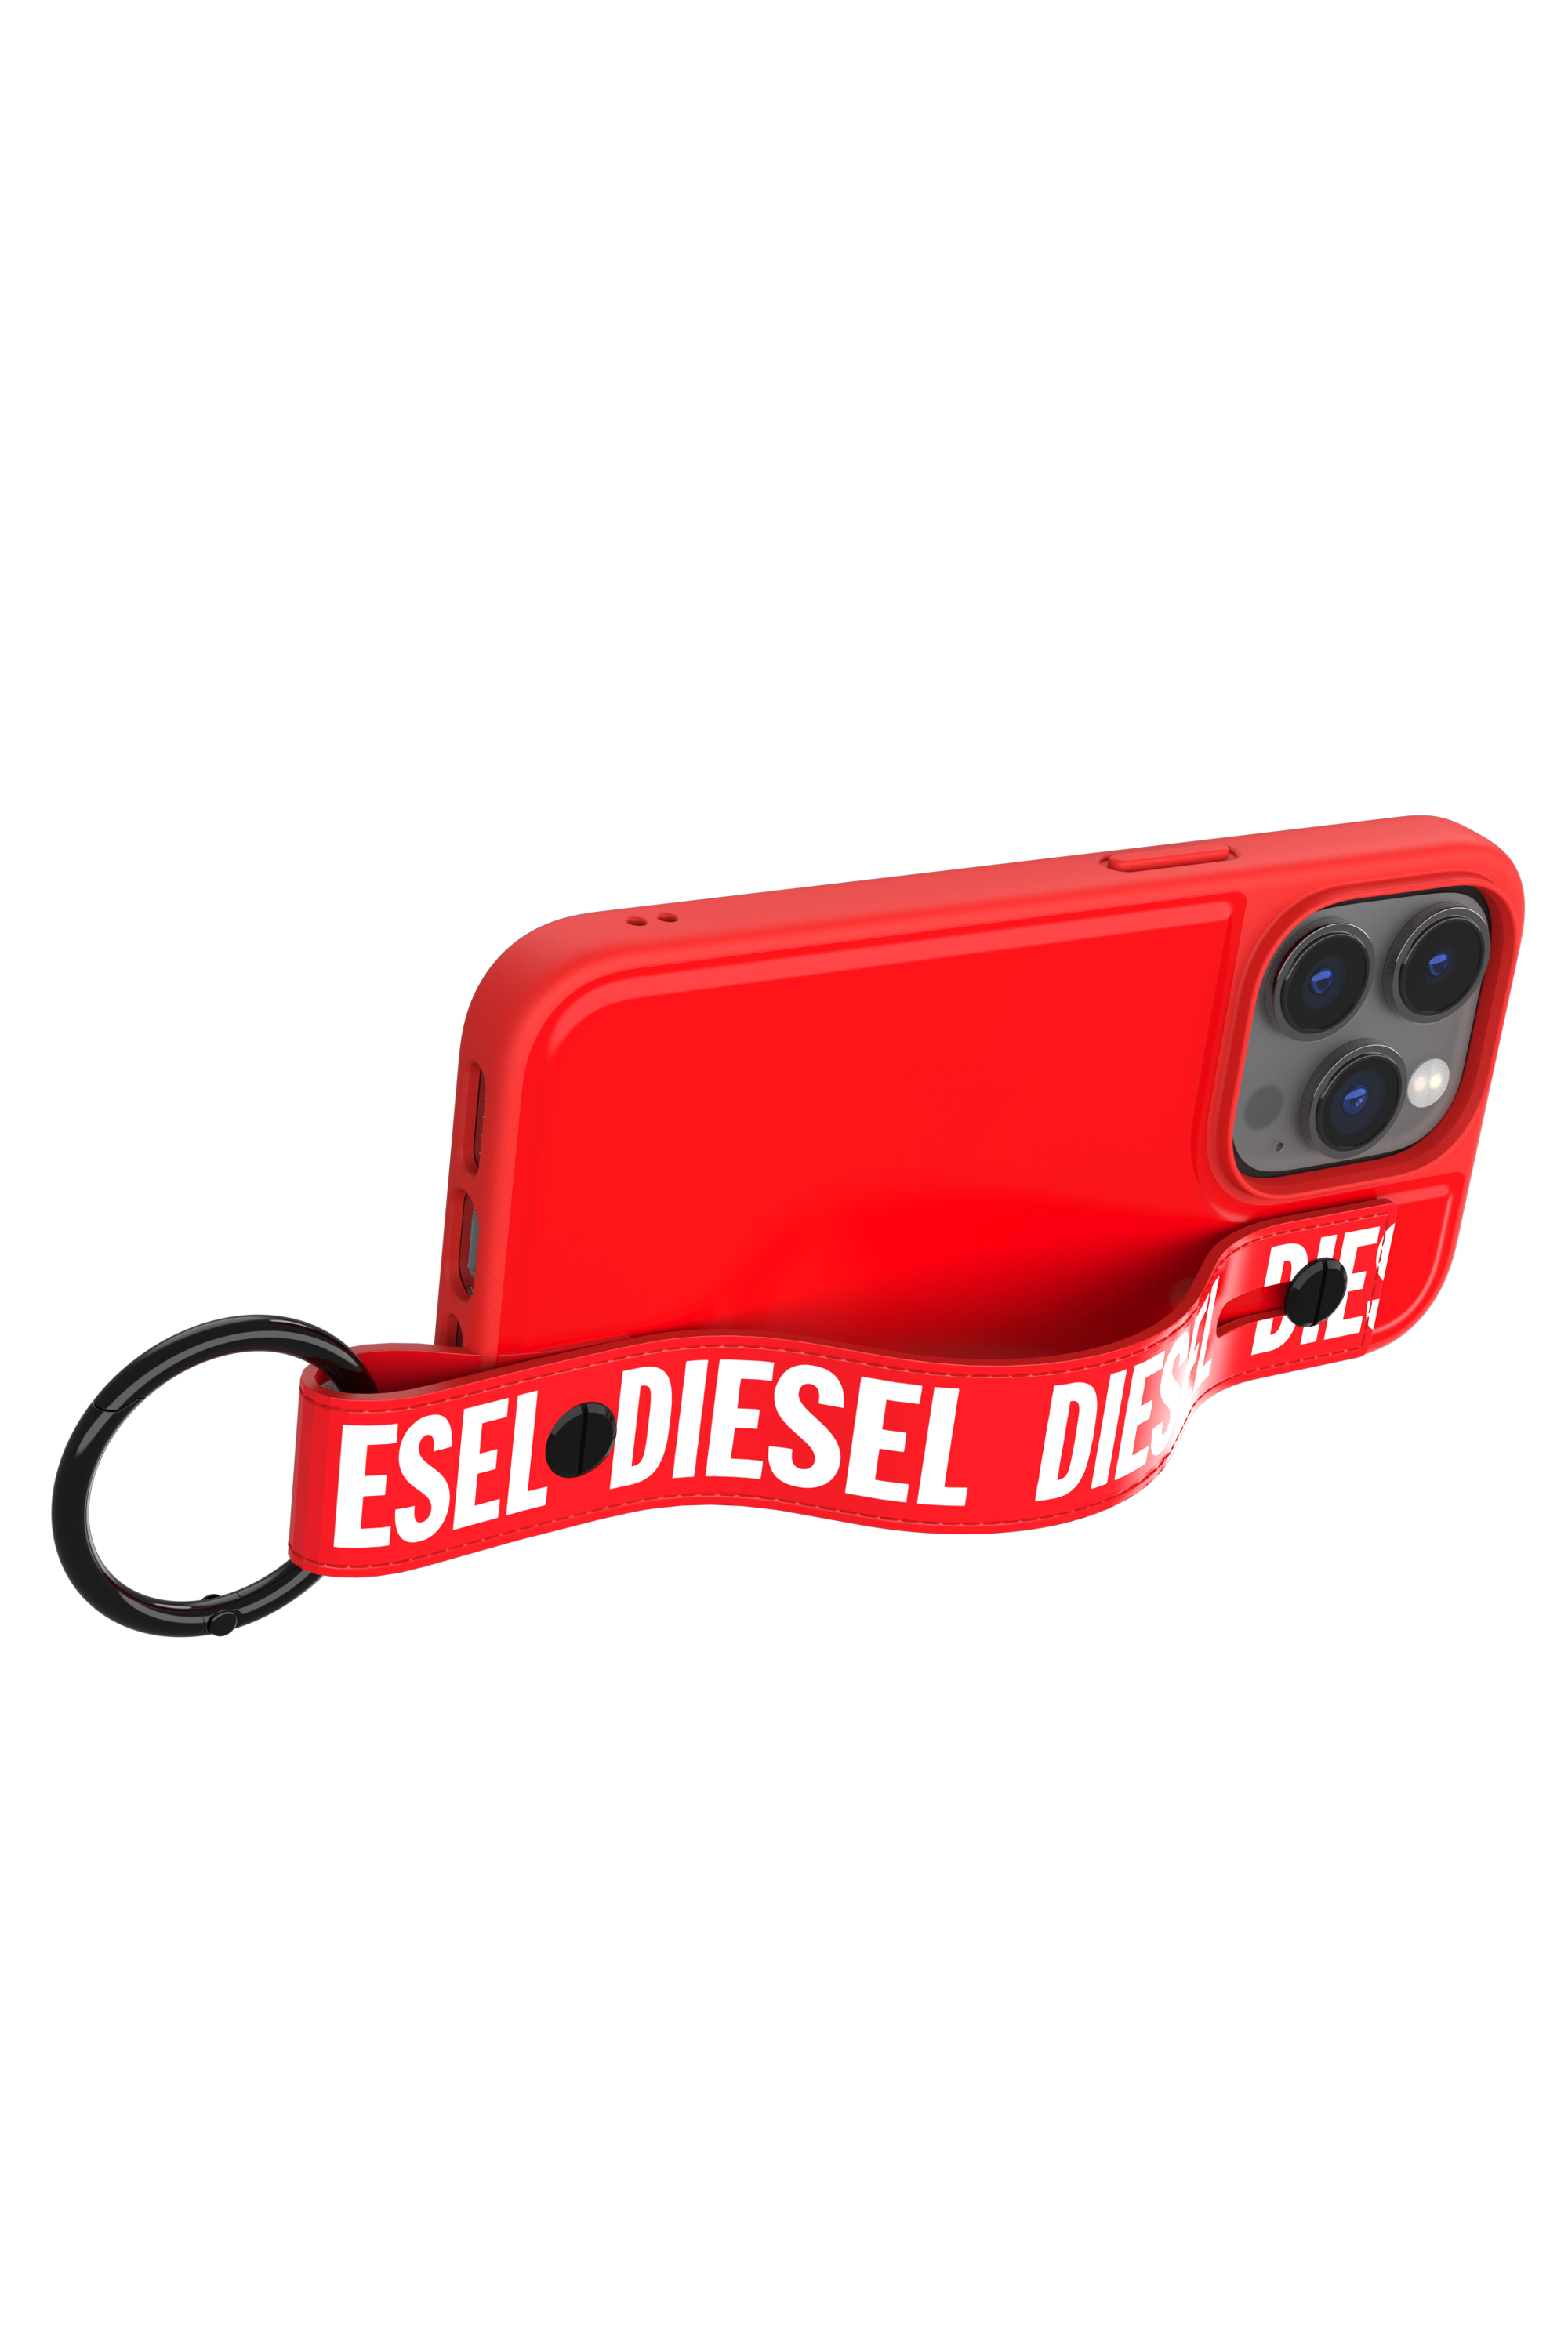 Diesel - 50287 MOULDED CASE, Red - Image 5